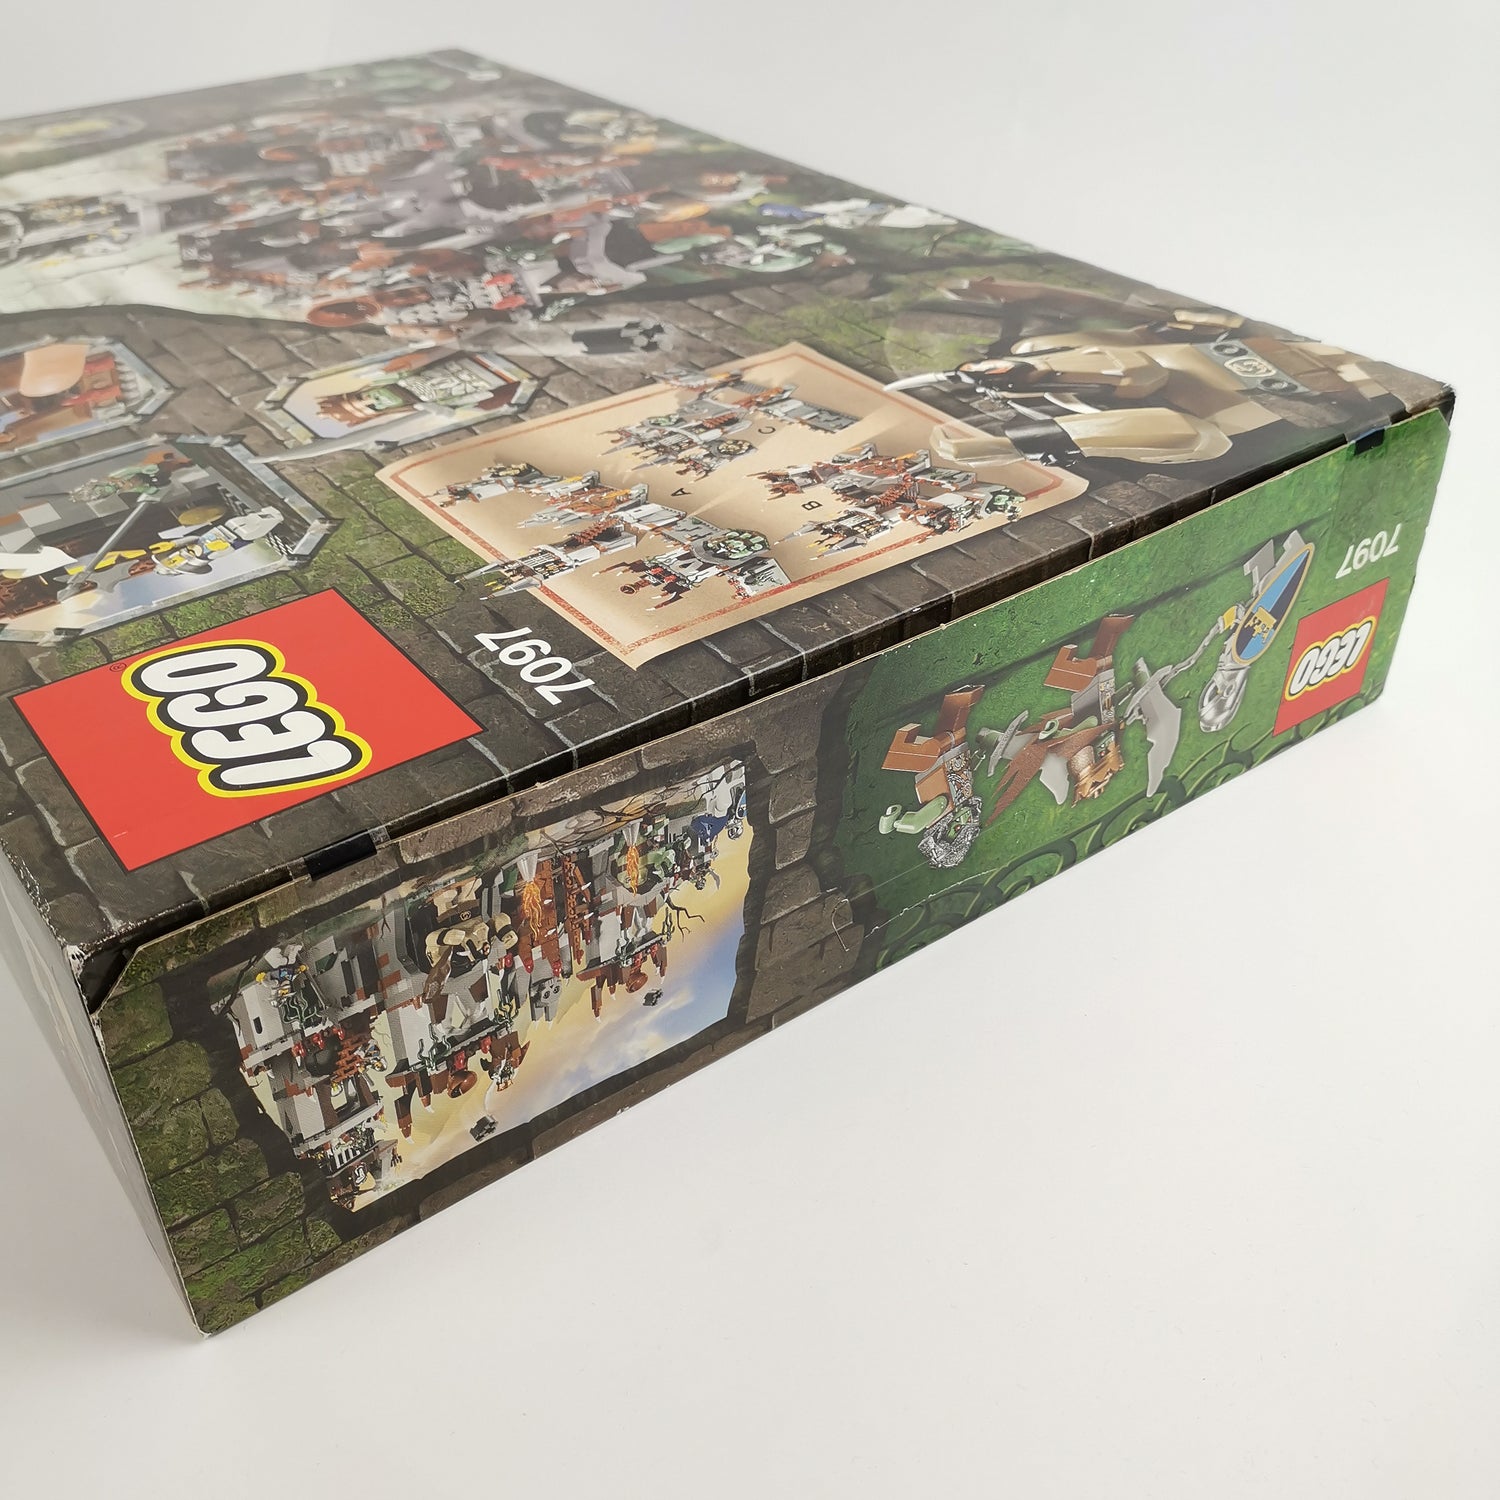 Lego Set 7097 (7-14 Jahre) : Castle Bergfestung der Trolle | OVP NEU NEW